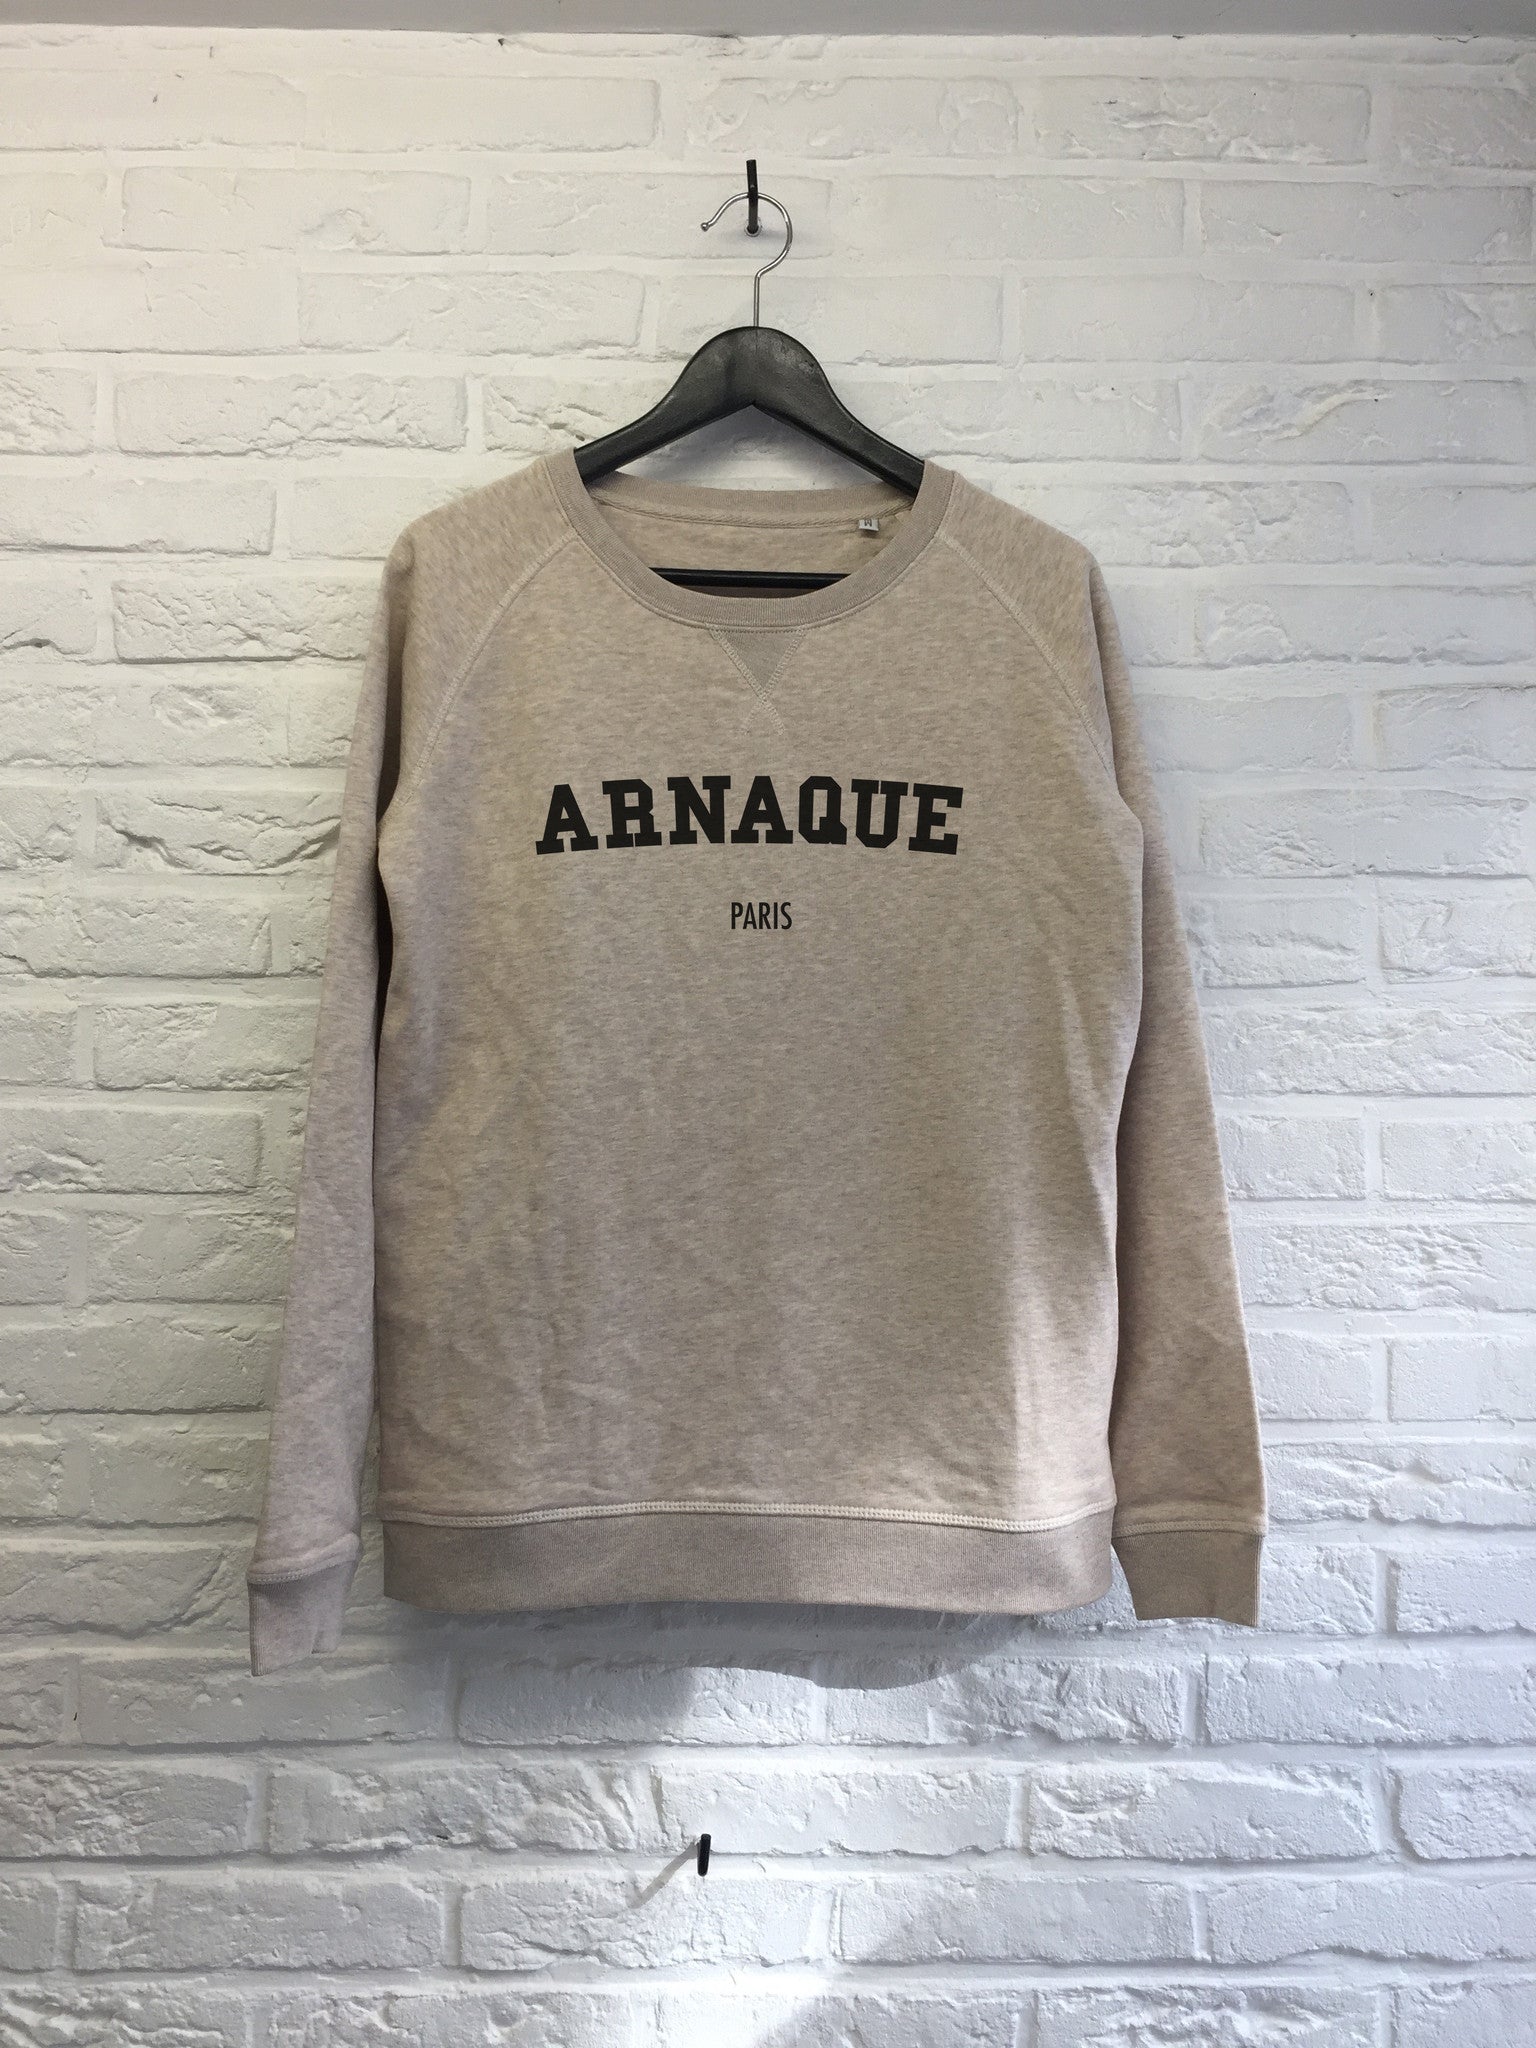 Arnaque Paris - Sweat - Femme-Sweat shirts-Atelier Amelot